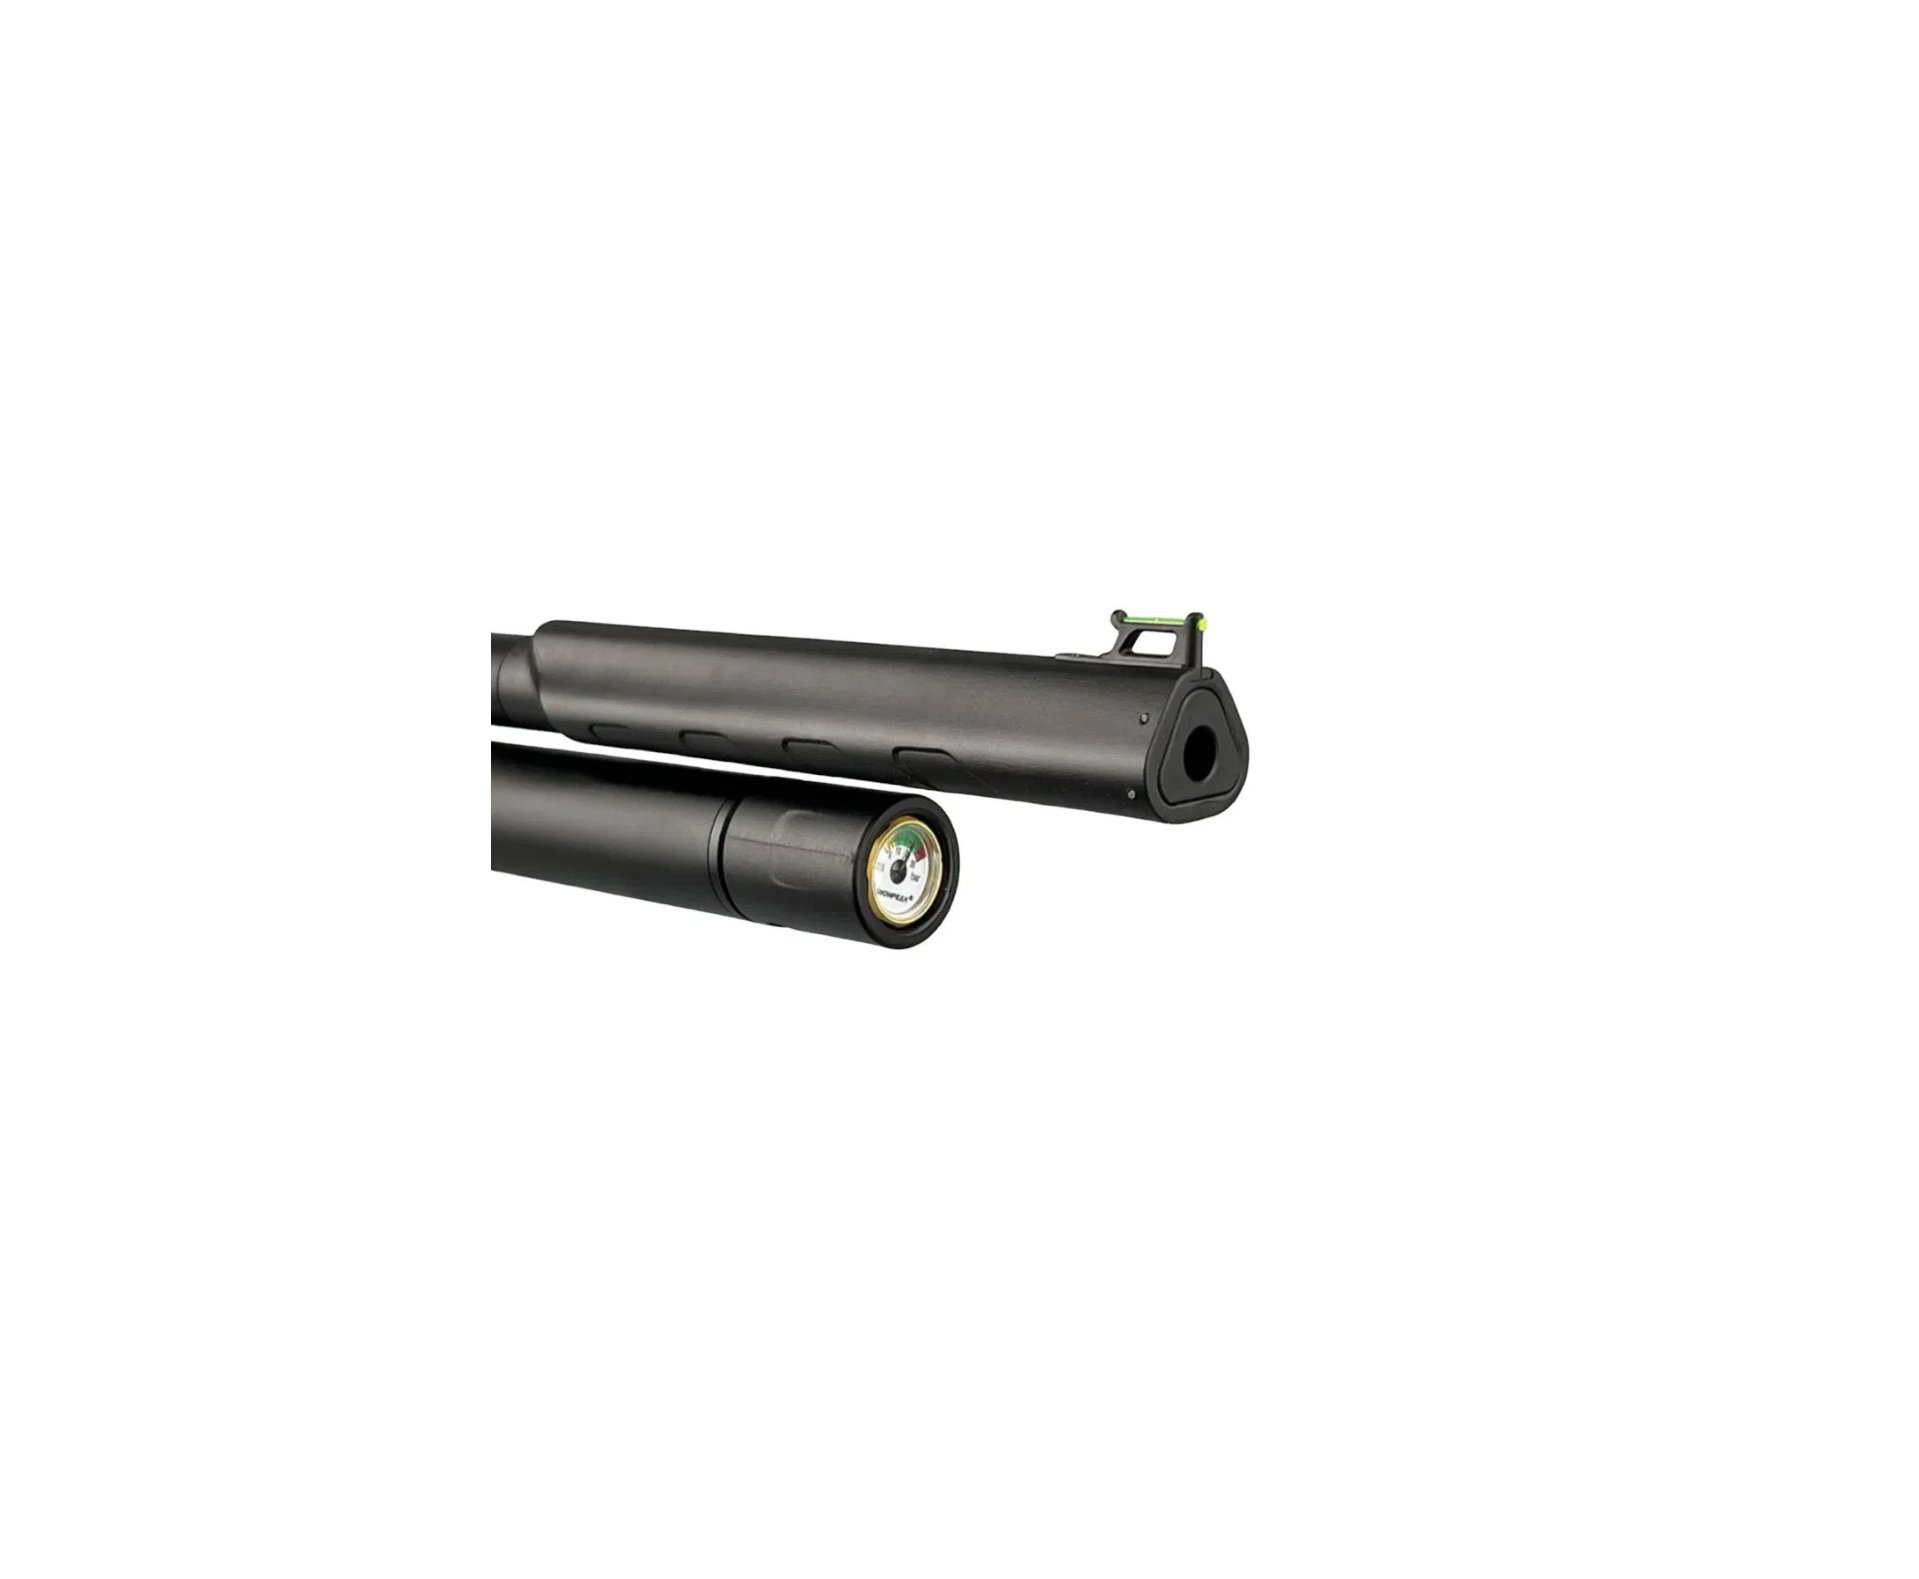 Carabina de Pressão PCP Artemis T-REX 5.5mm com Válvula Reguladora - Fixxar + Compressor